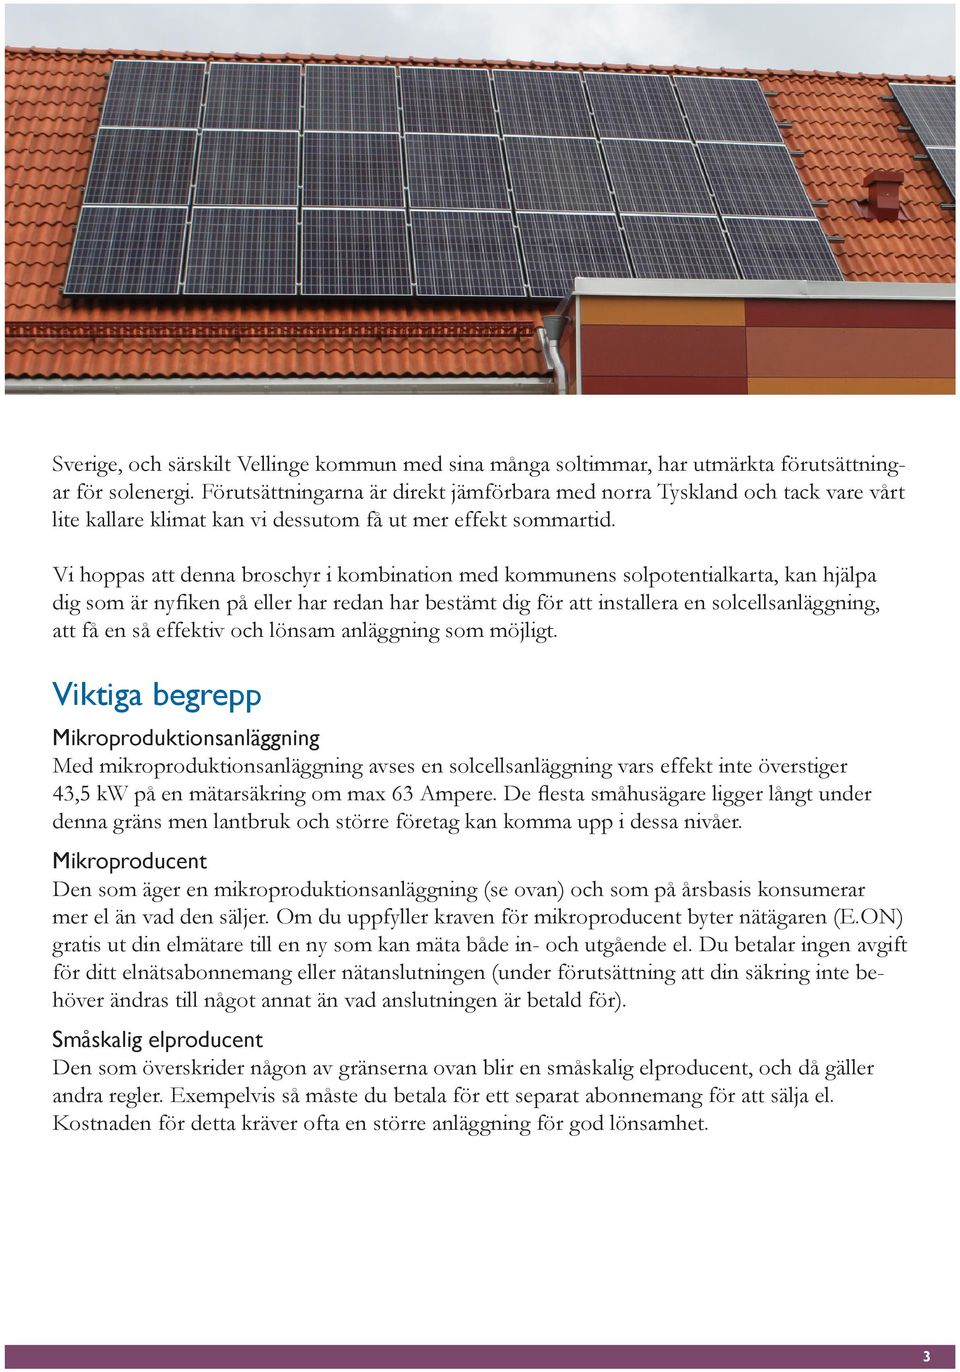 Vi hoppas att denna broschyr i kombination med kommunens solpotentialkarta, kan hjälpa dig som är nyfiken på eller har redan har bestämt dig för att installera en solcellsanläggning, att få en så